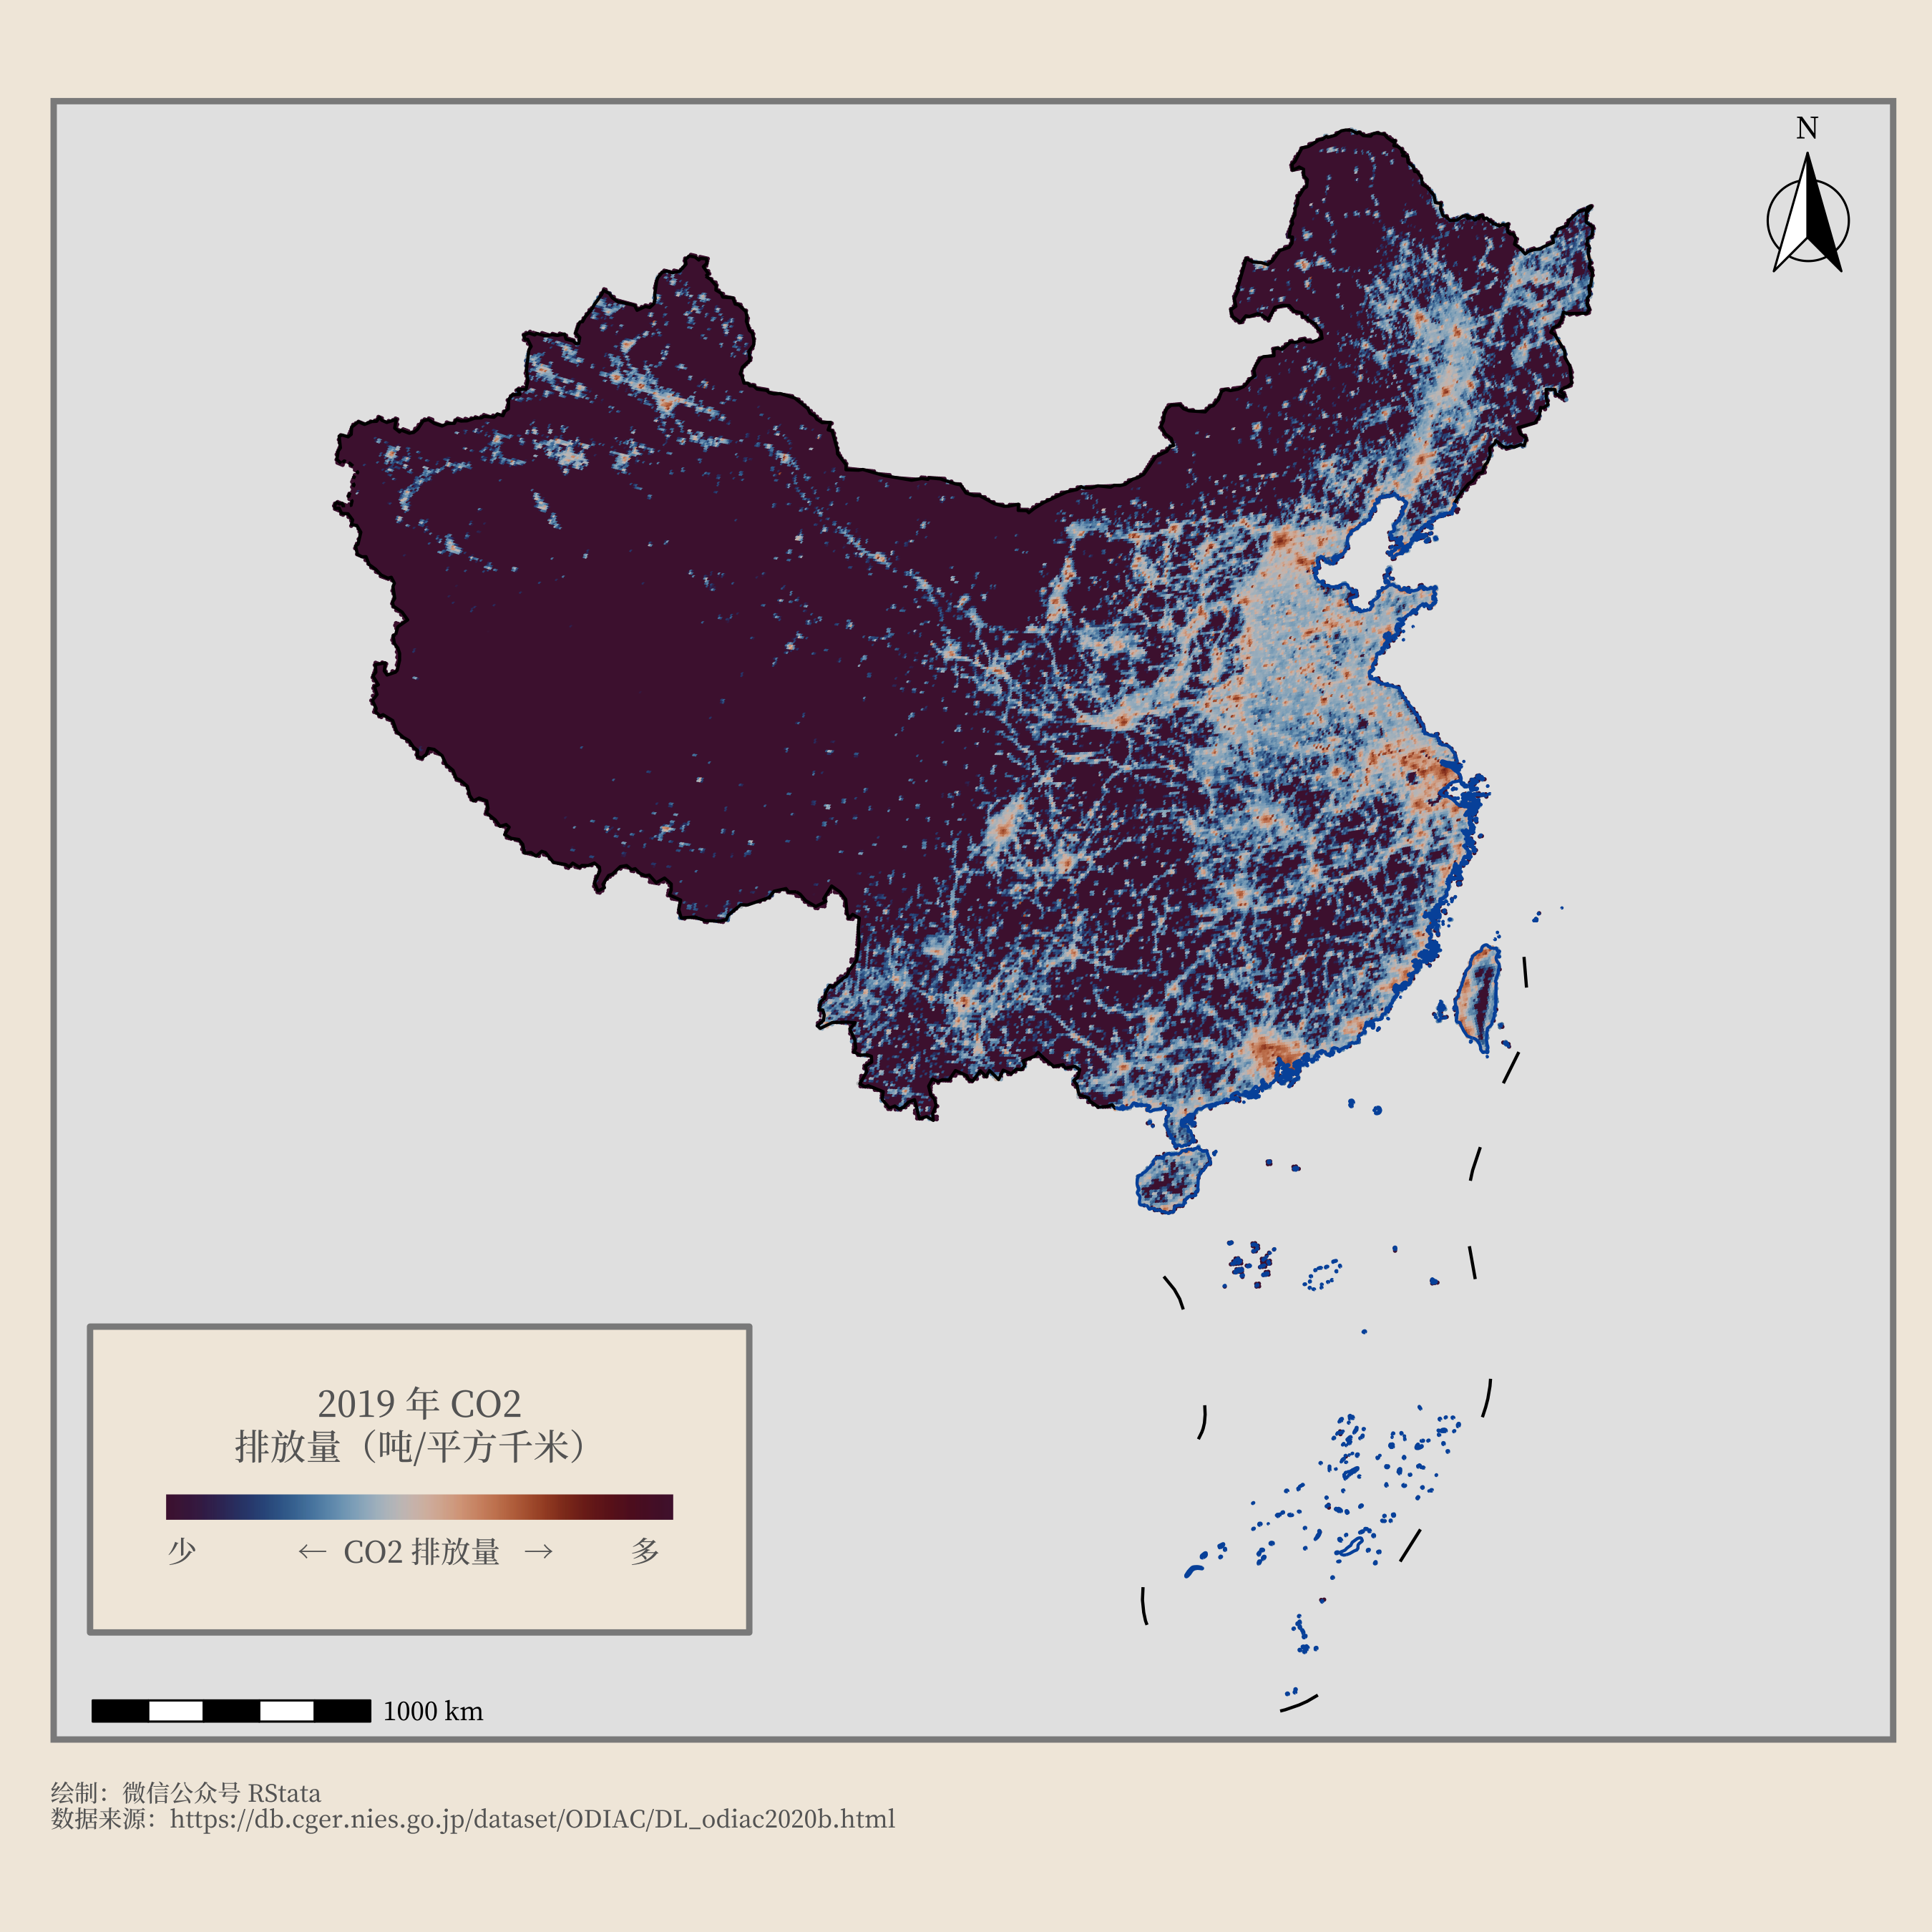 2019 年中国各地的 CO2 排放强度